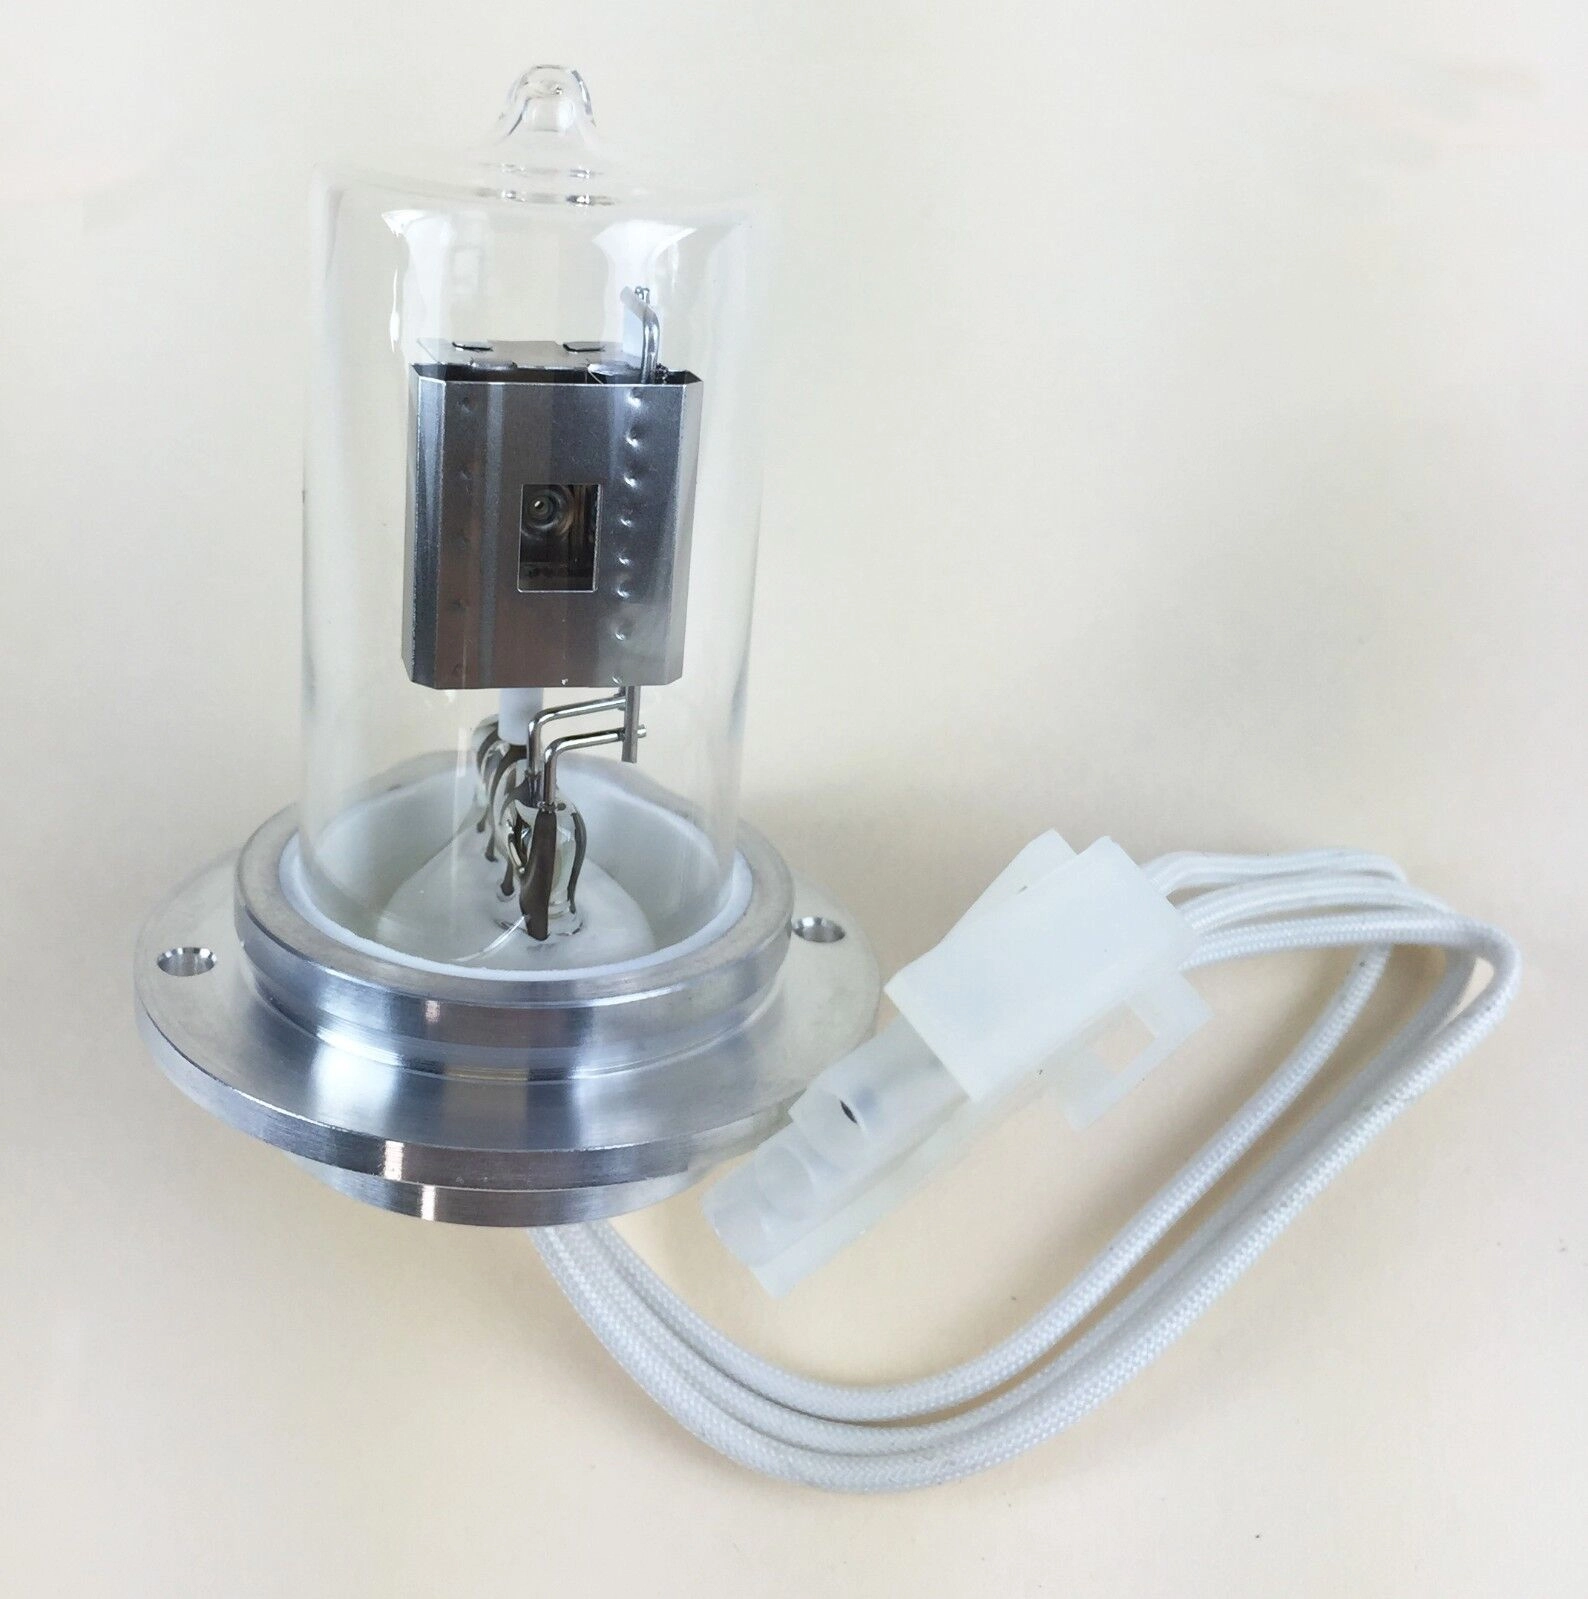 Deuterium Lamp for Agilent /HP 8452 UV-Vis, HP 845